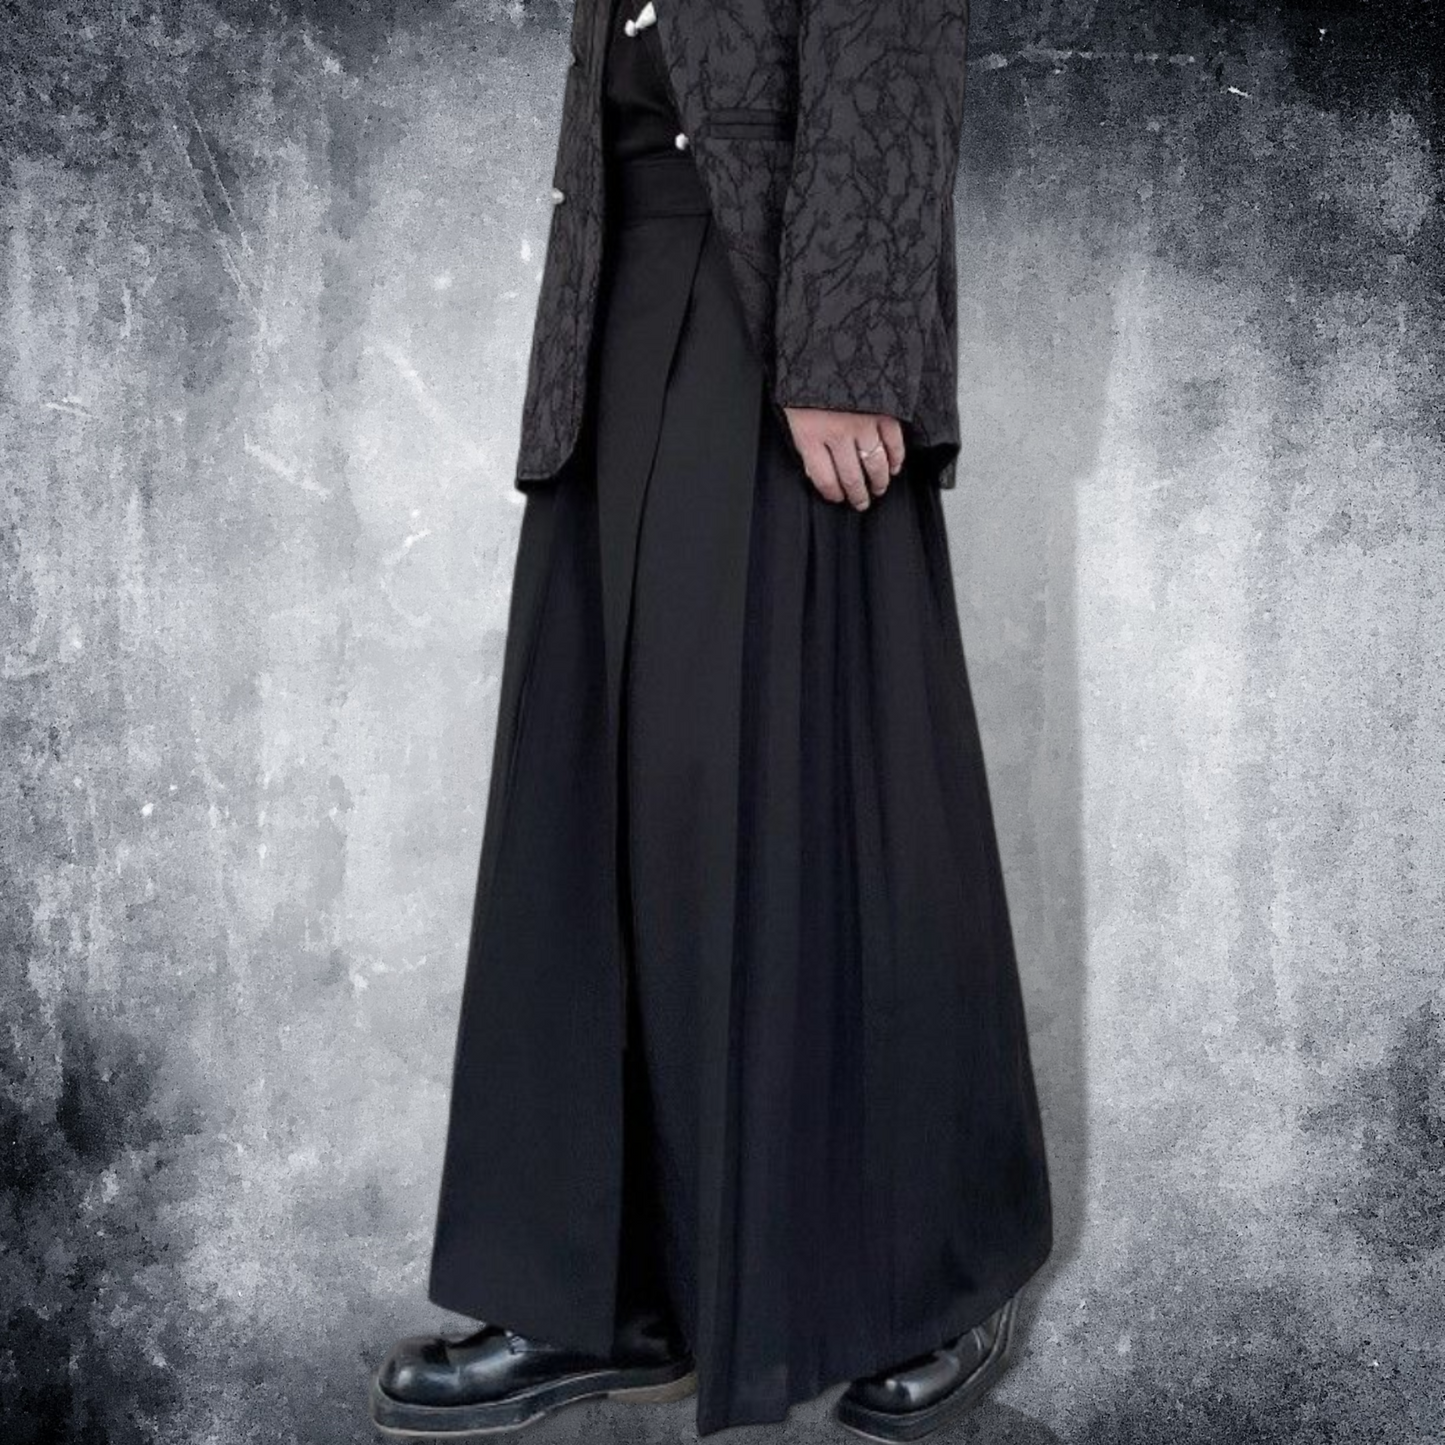 unisex dark pleated skirt EN250